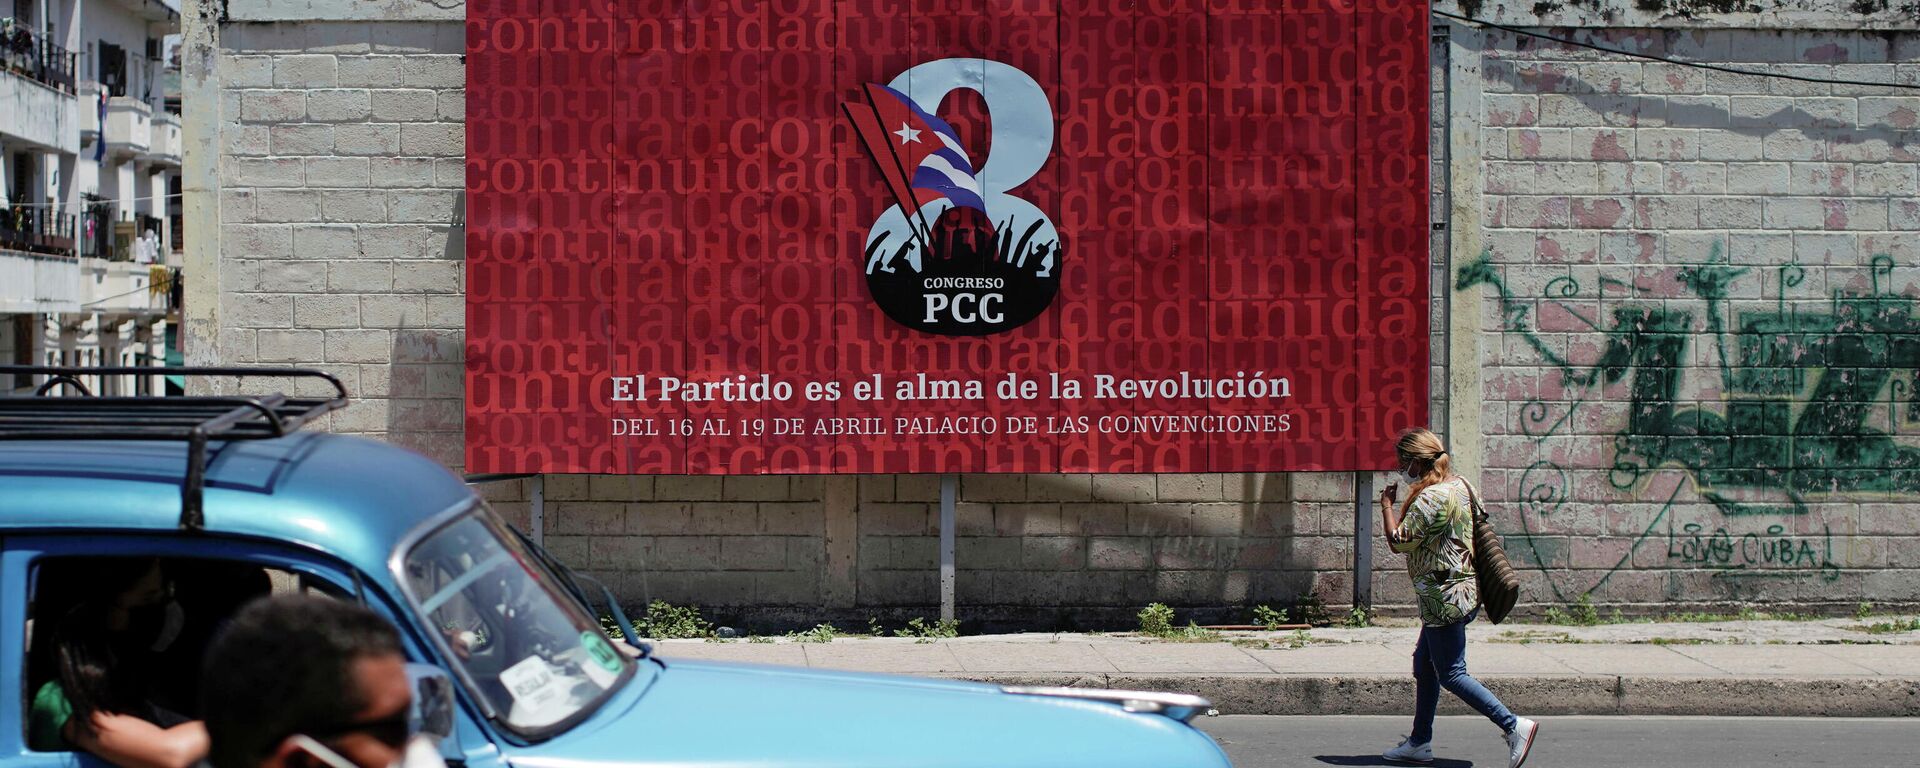 El VIII Congreso del Partido Comunista de Cuba (PCC) - Sputnik Mundo, 1920, 17.04.2021